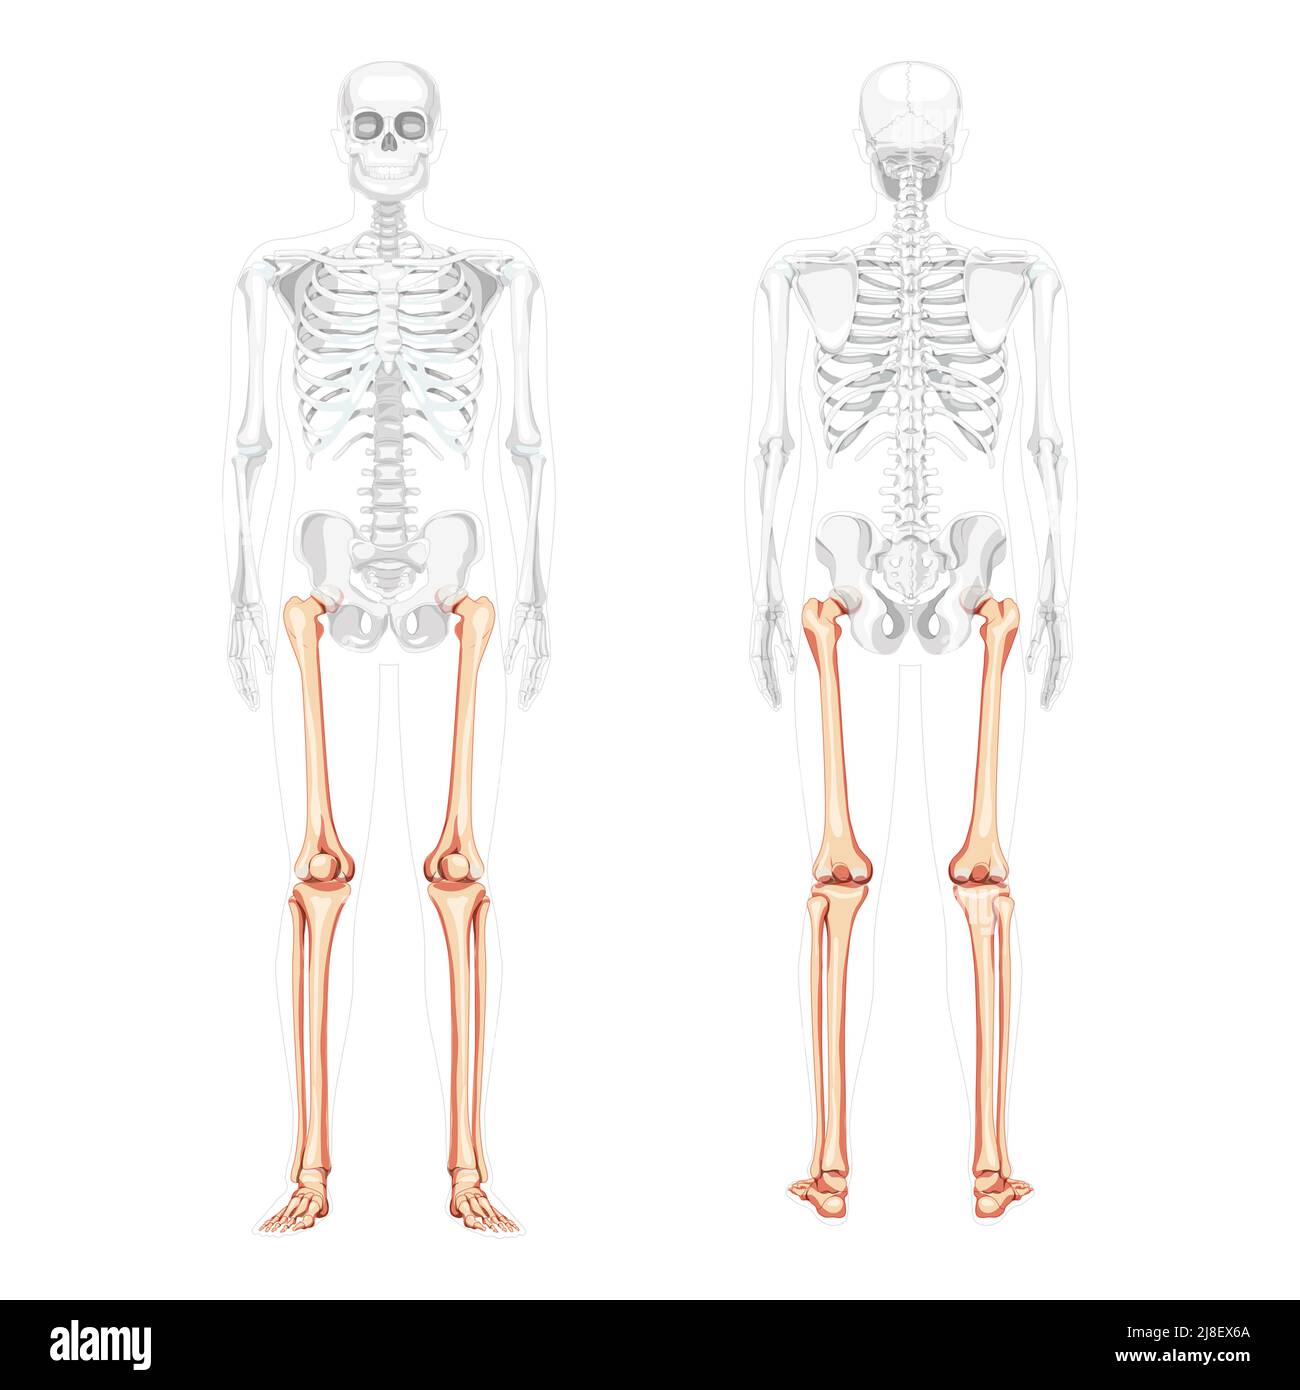 Оторванная конечность вектор. Amiri Skeleton Low. Скелет человека бедро